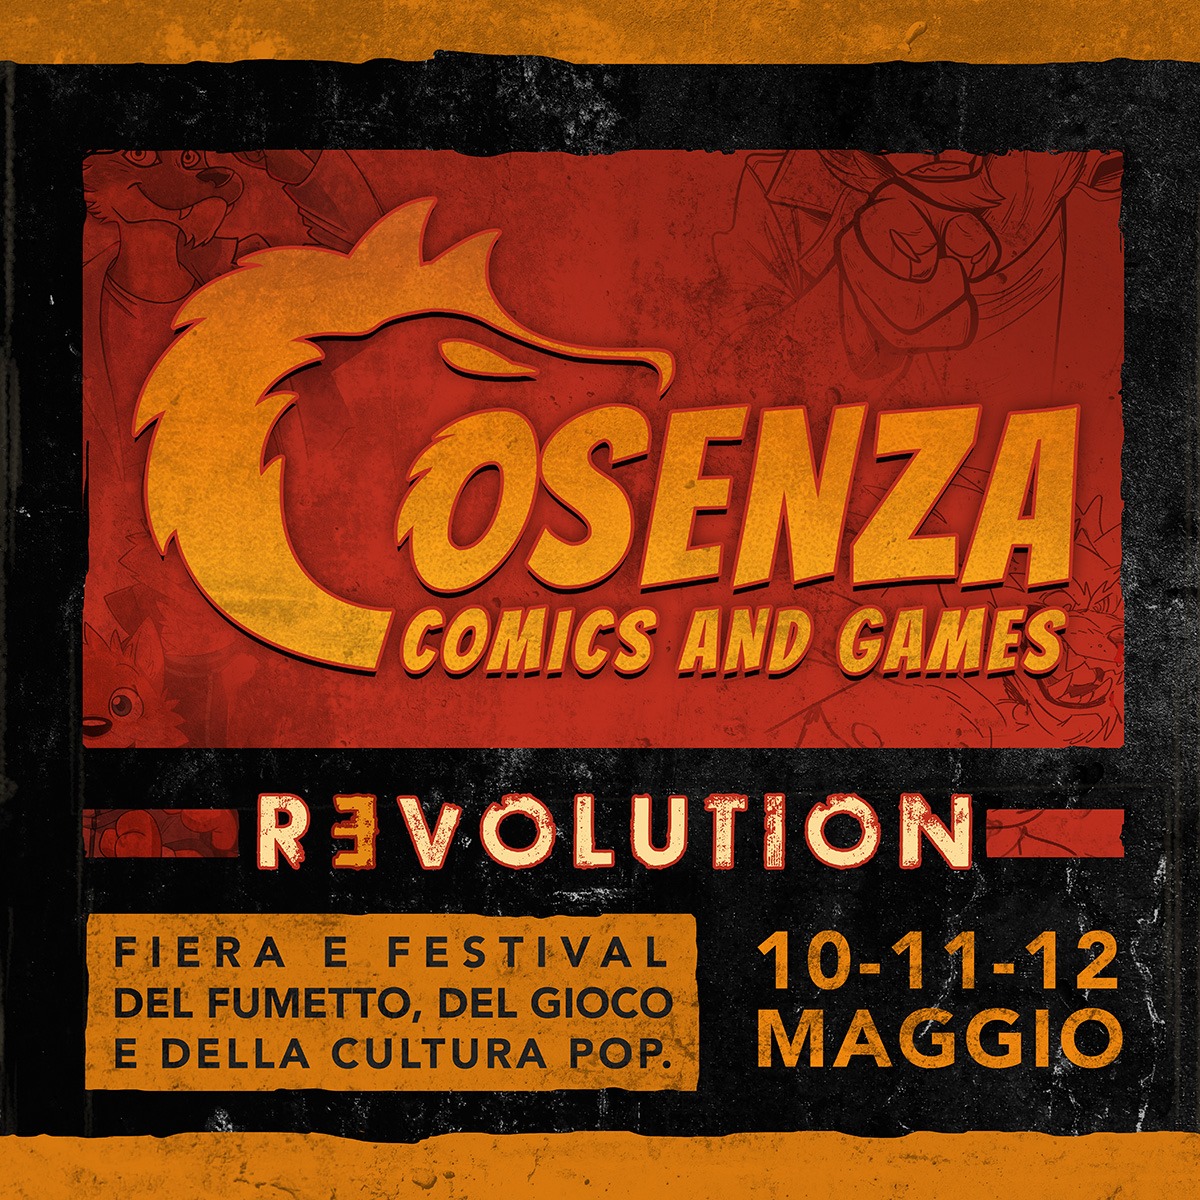 A maggio 2019 la quinta edizione di Cosenza Comics!